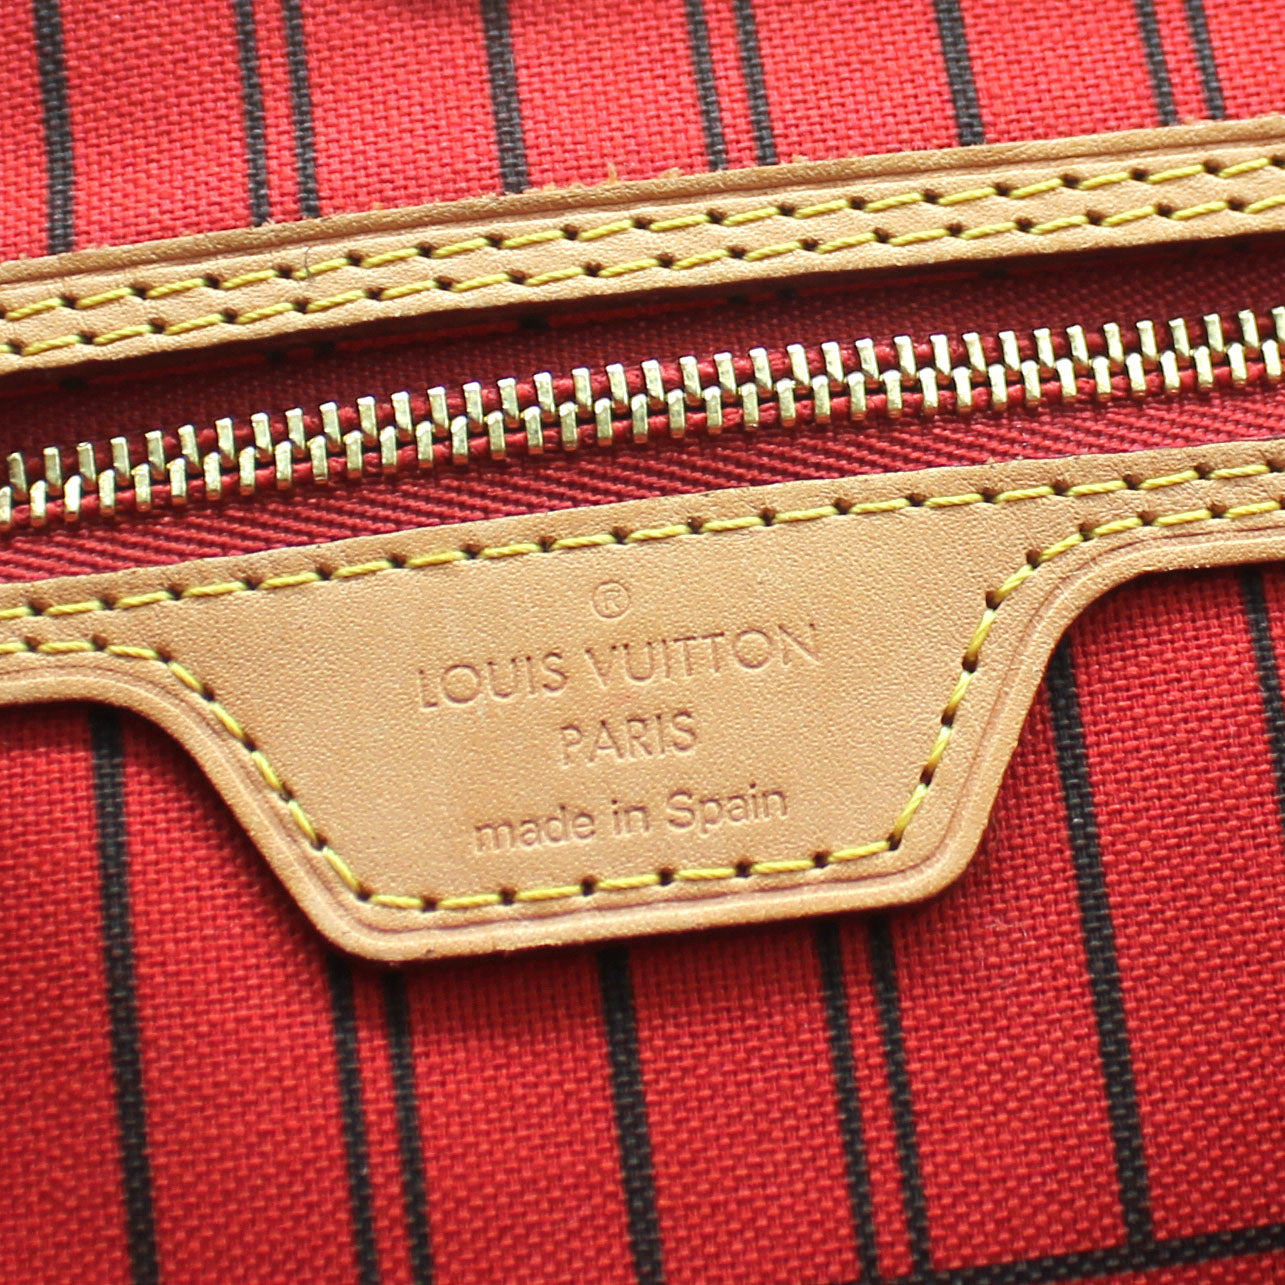 Louis Vuitton Louis Vuitton, Neverfull zipper pouch